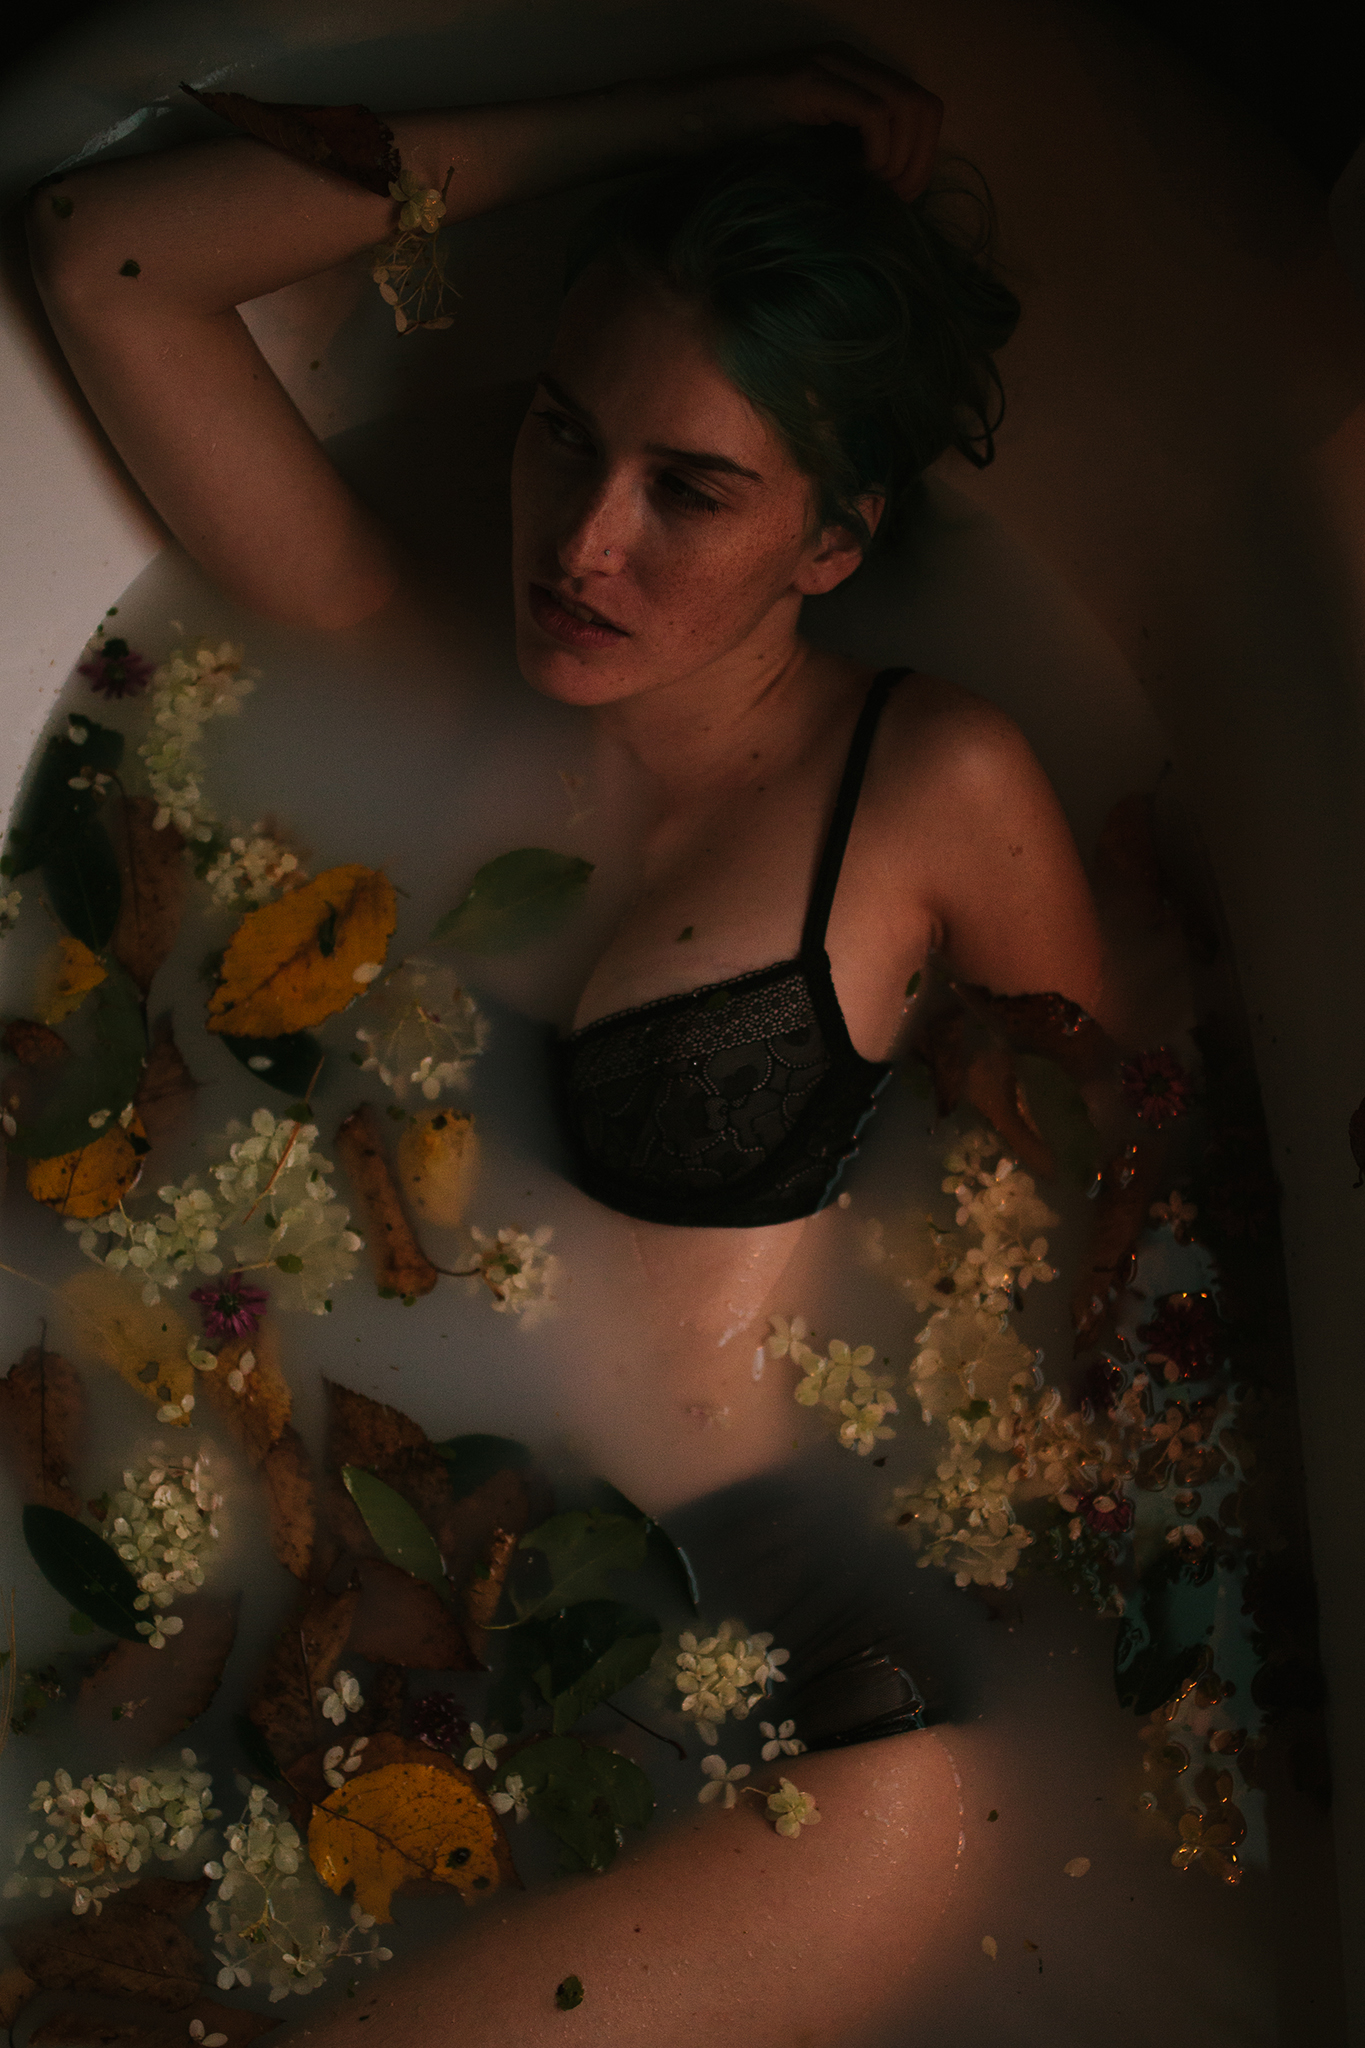 flower_milk_bath_boudoir_3.jpg